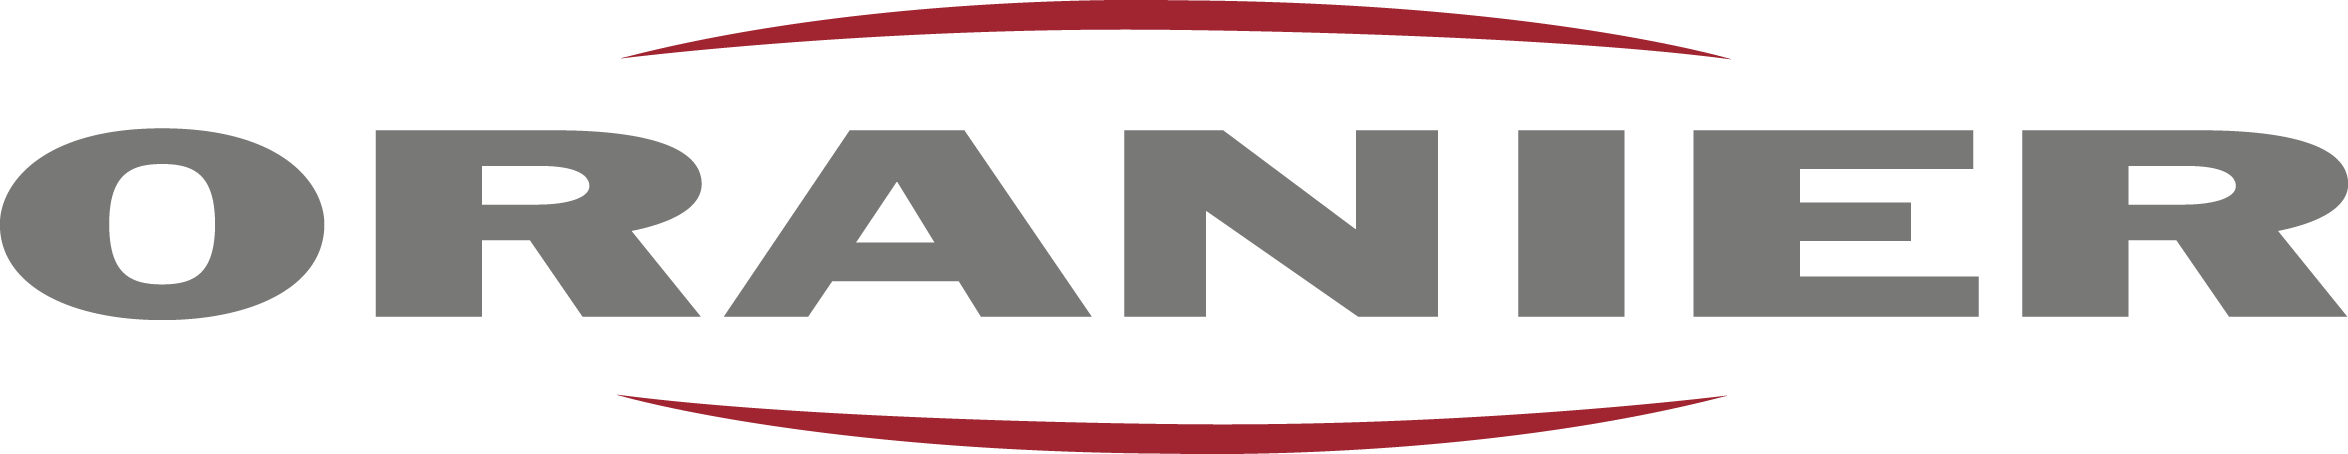 Logo de la marque Oranier